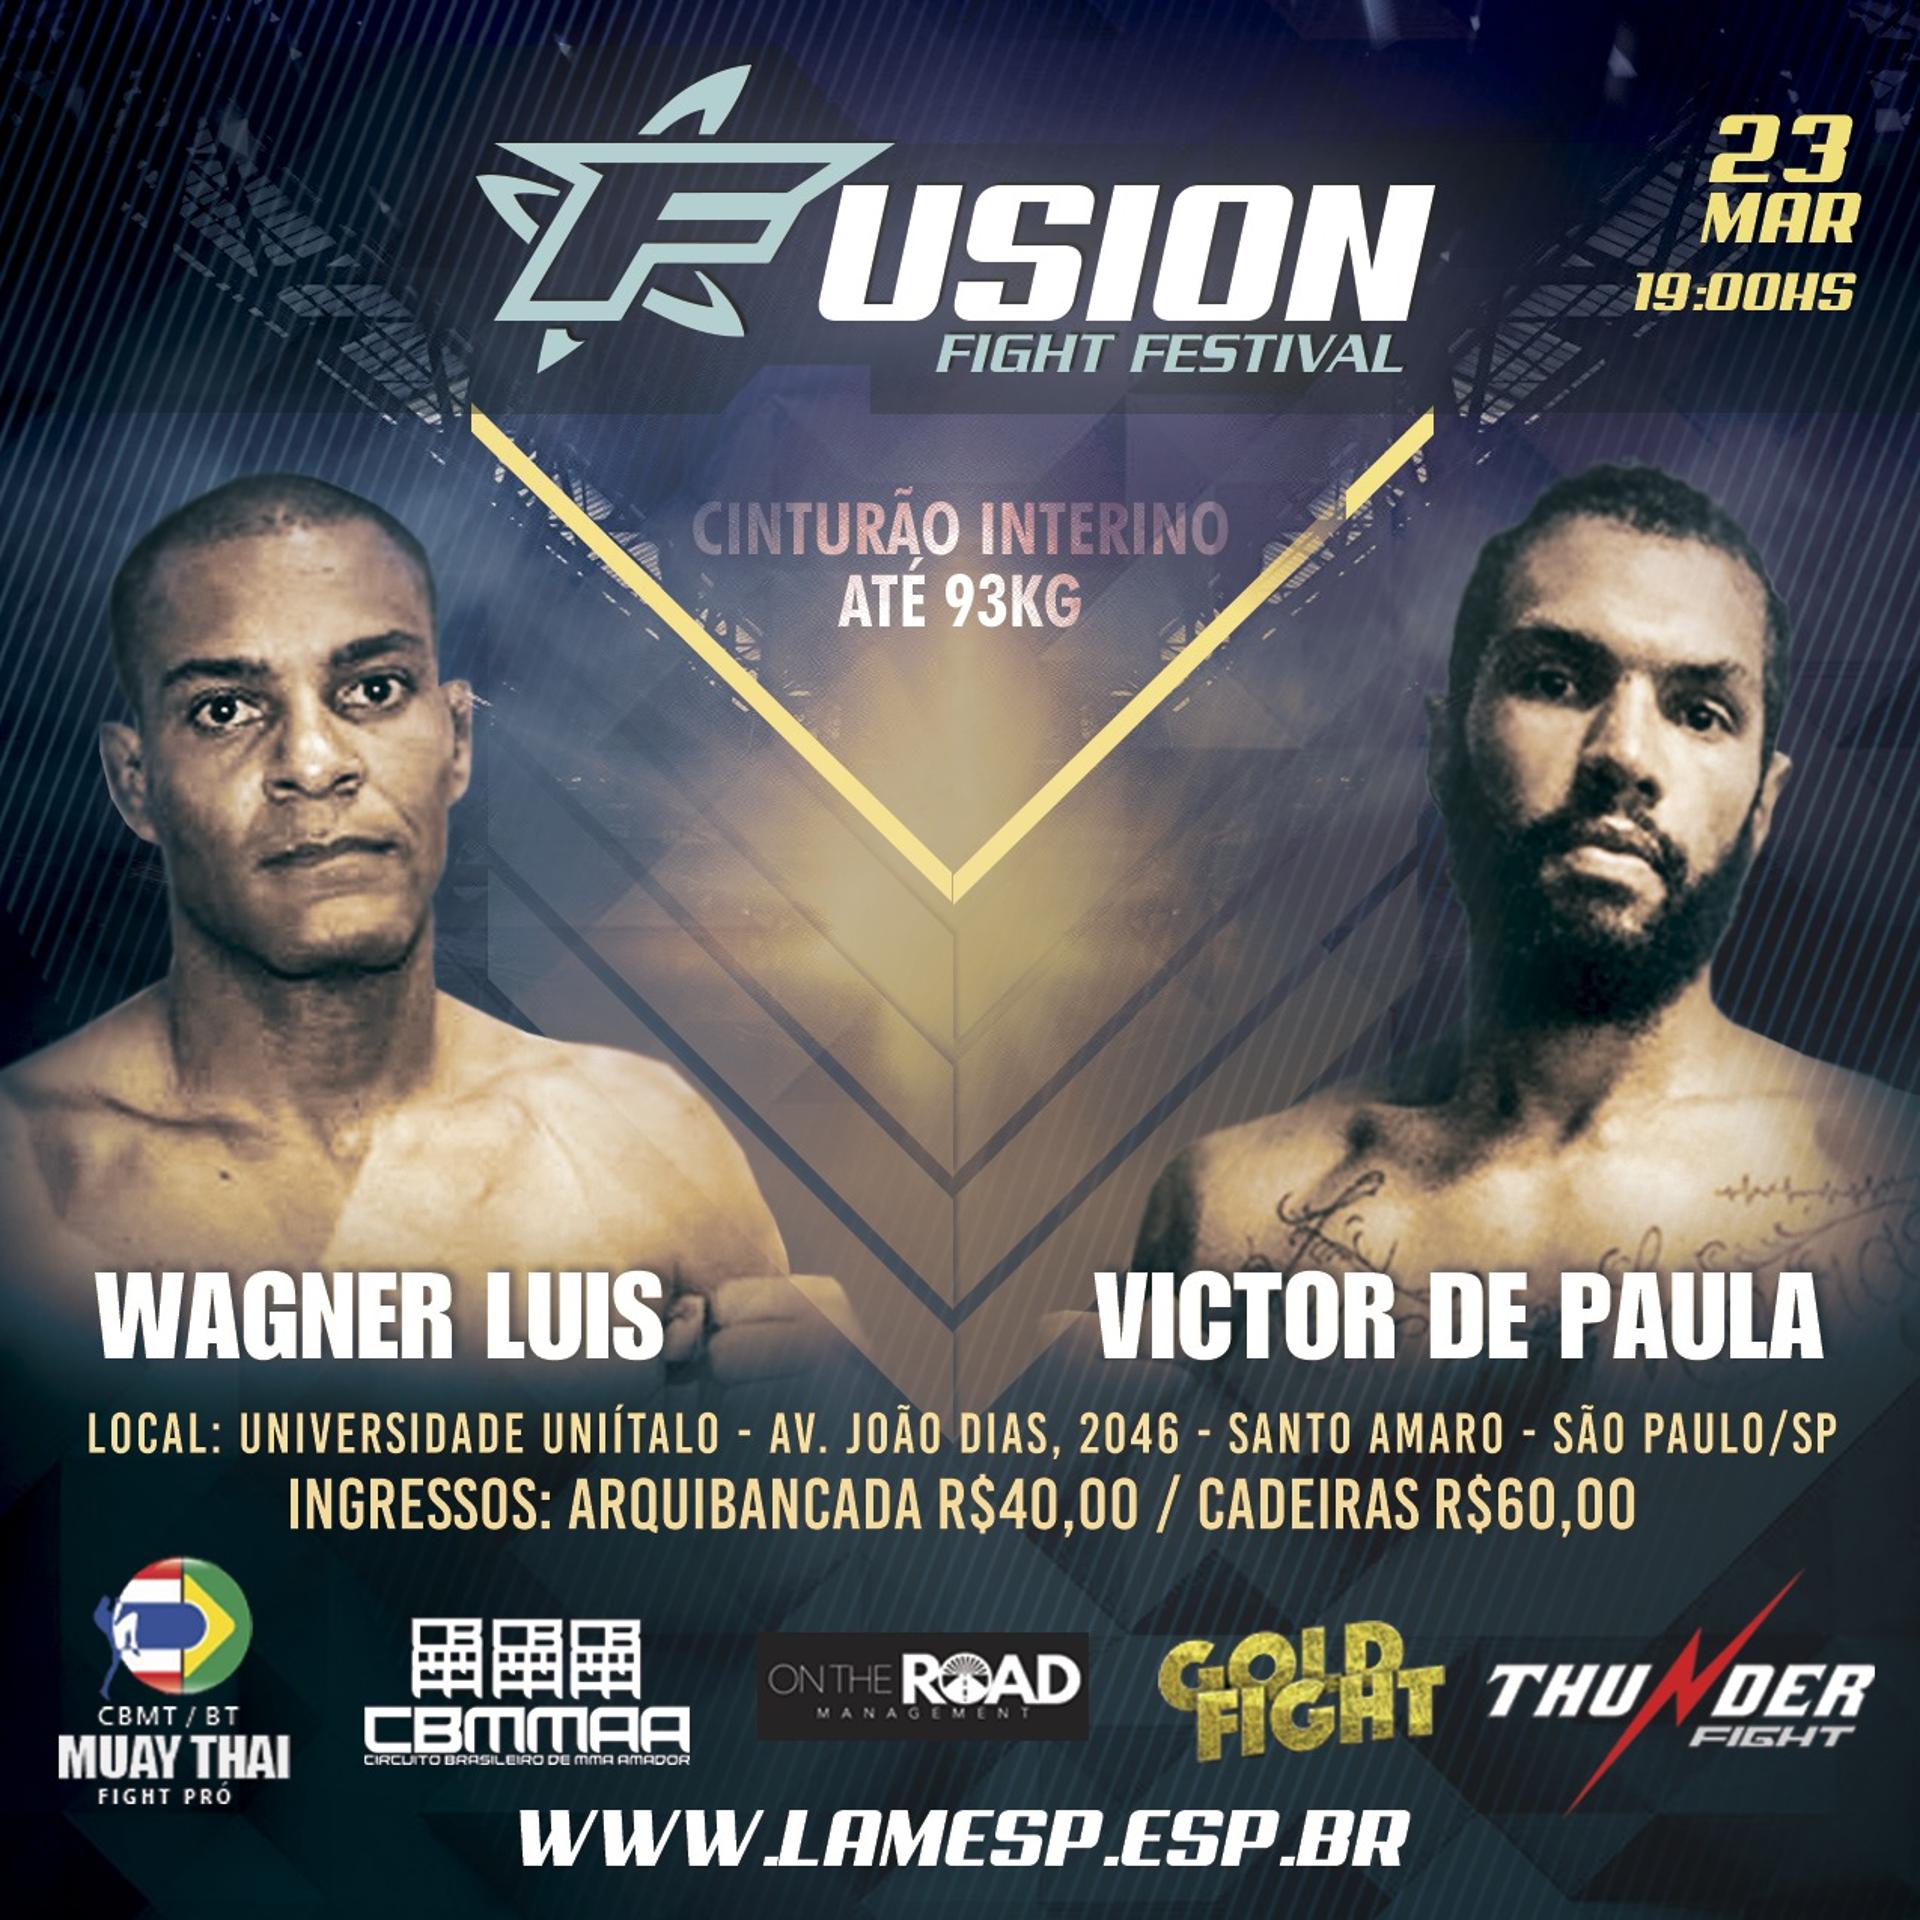 RUDSON MATEUS (FOTO: REPRODUÇÃO)Evento acontece no próximo dia 23 em São Paulo e vai contar com lutas de MMA e Muay Thai (Foto: Divulgação)